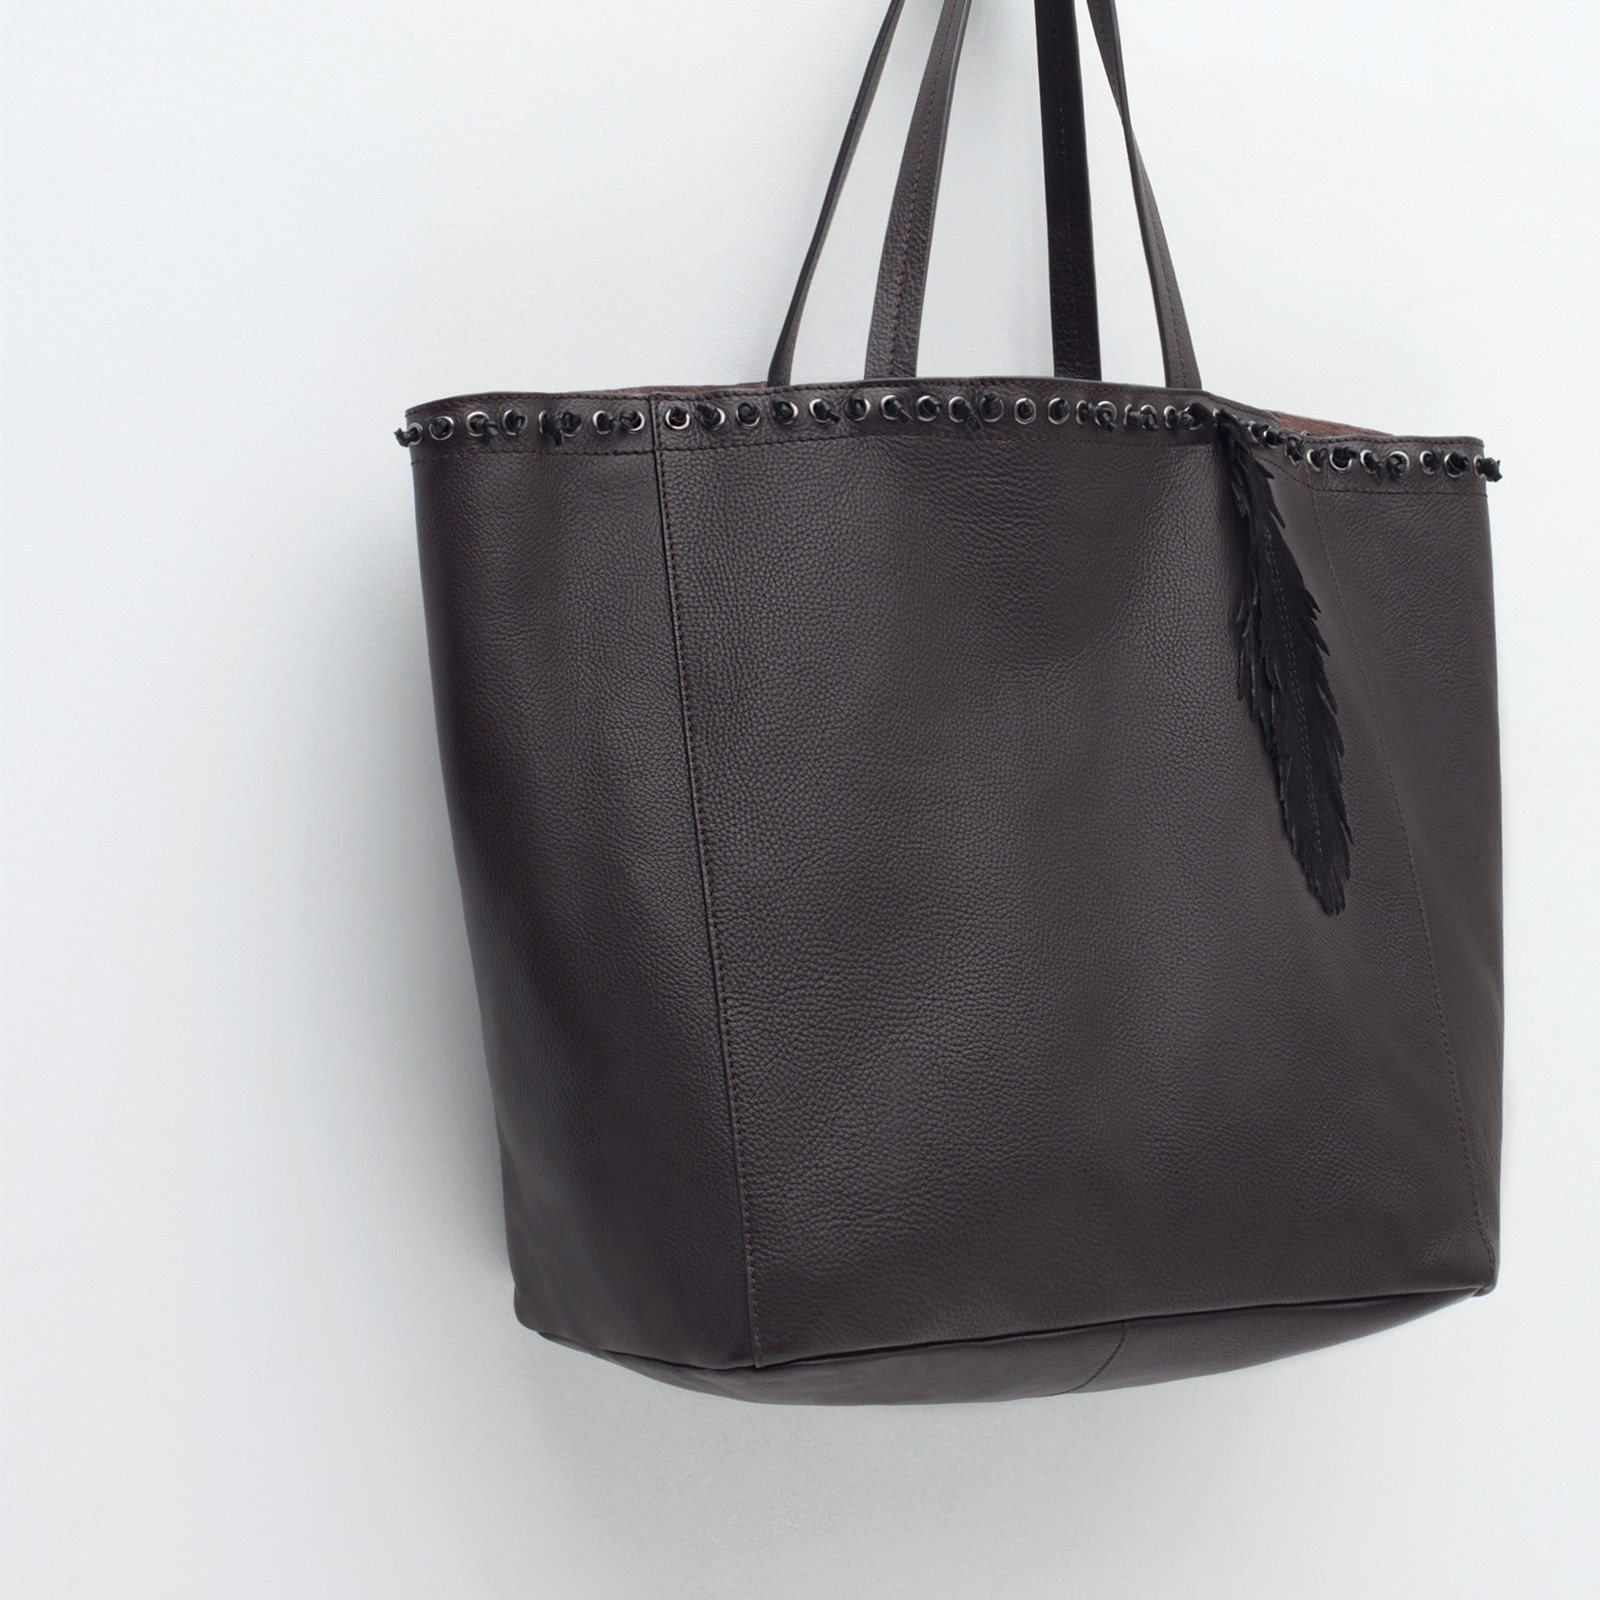 Zara csábos női fekete bevásárló táska 2015.10.15 #88753 fotója